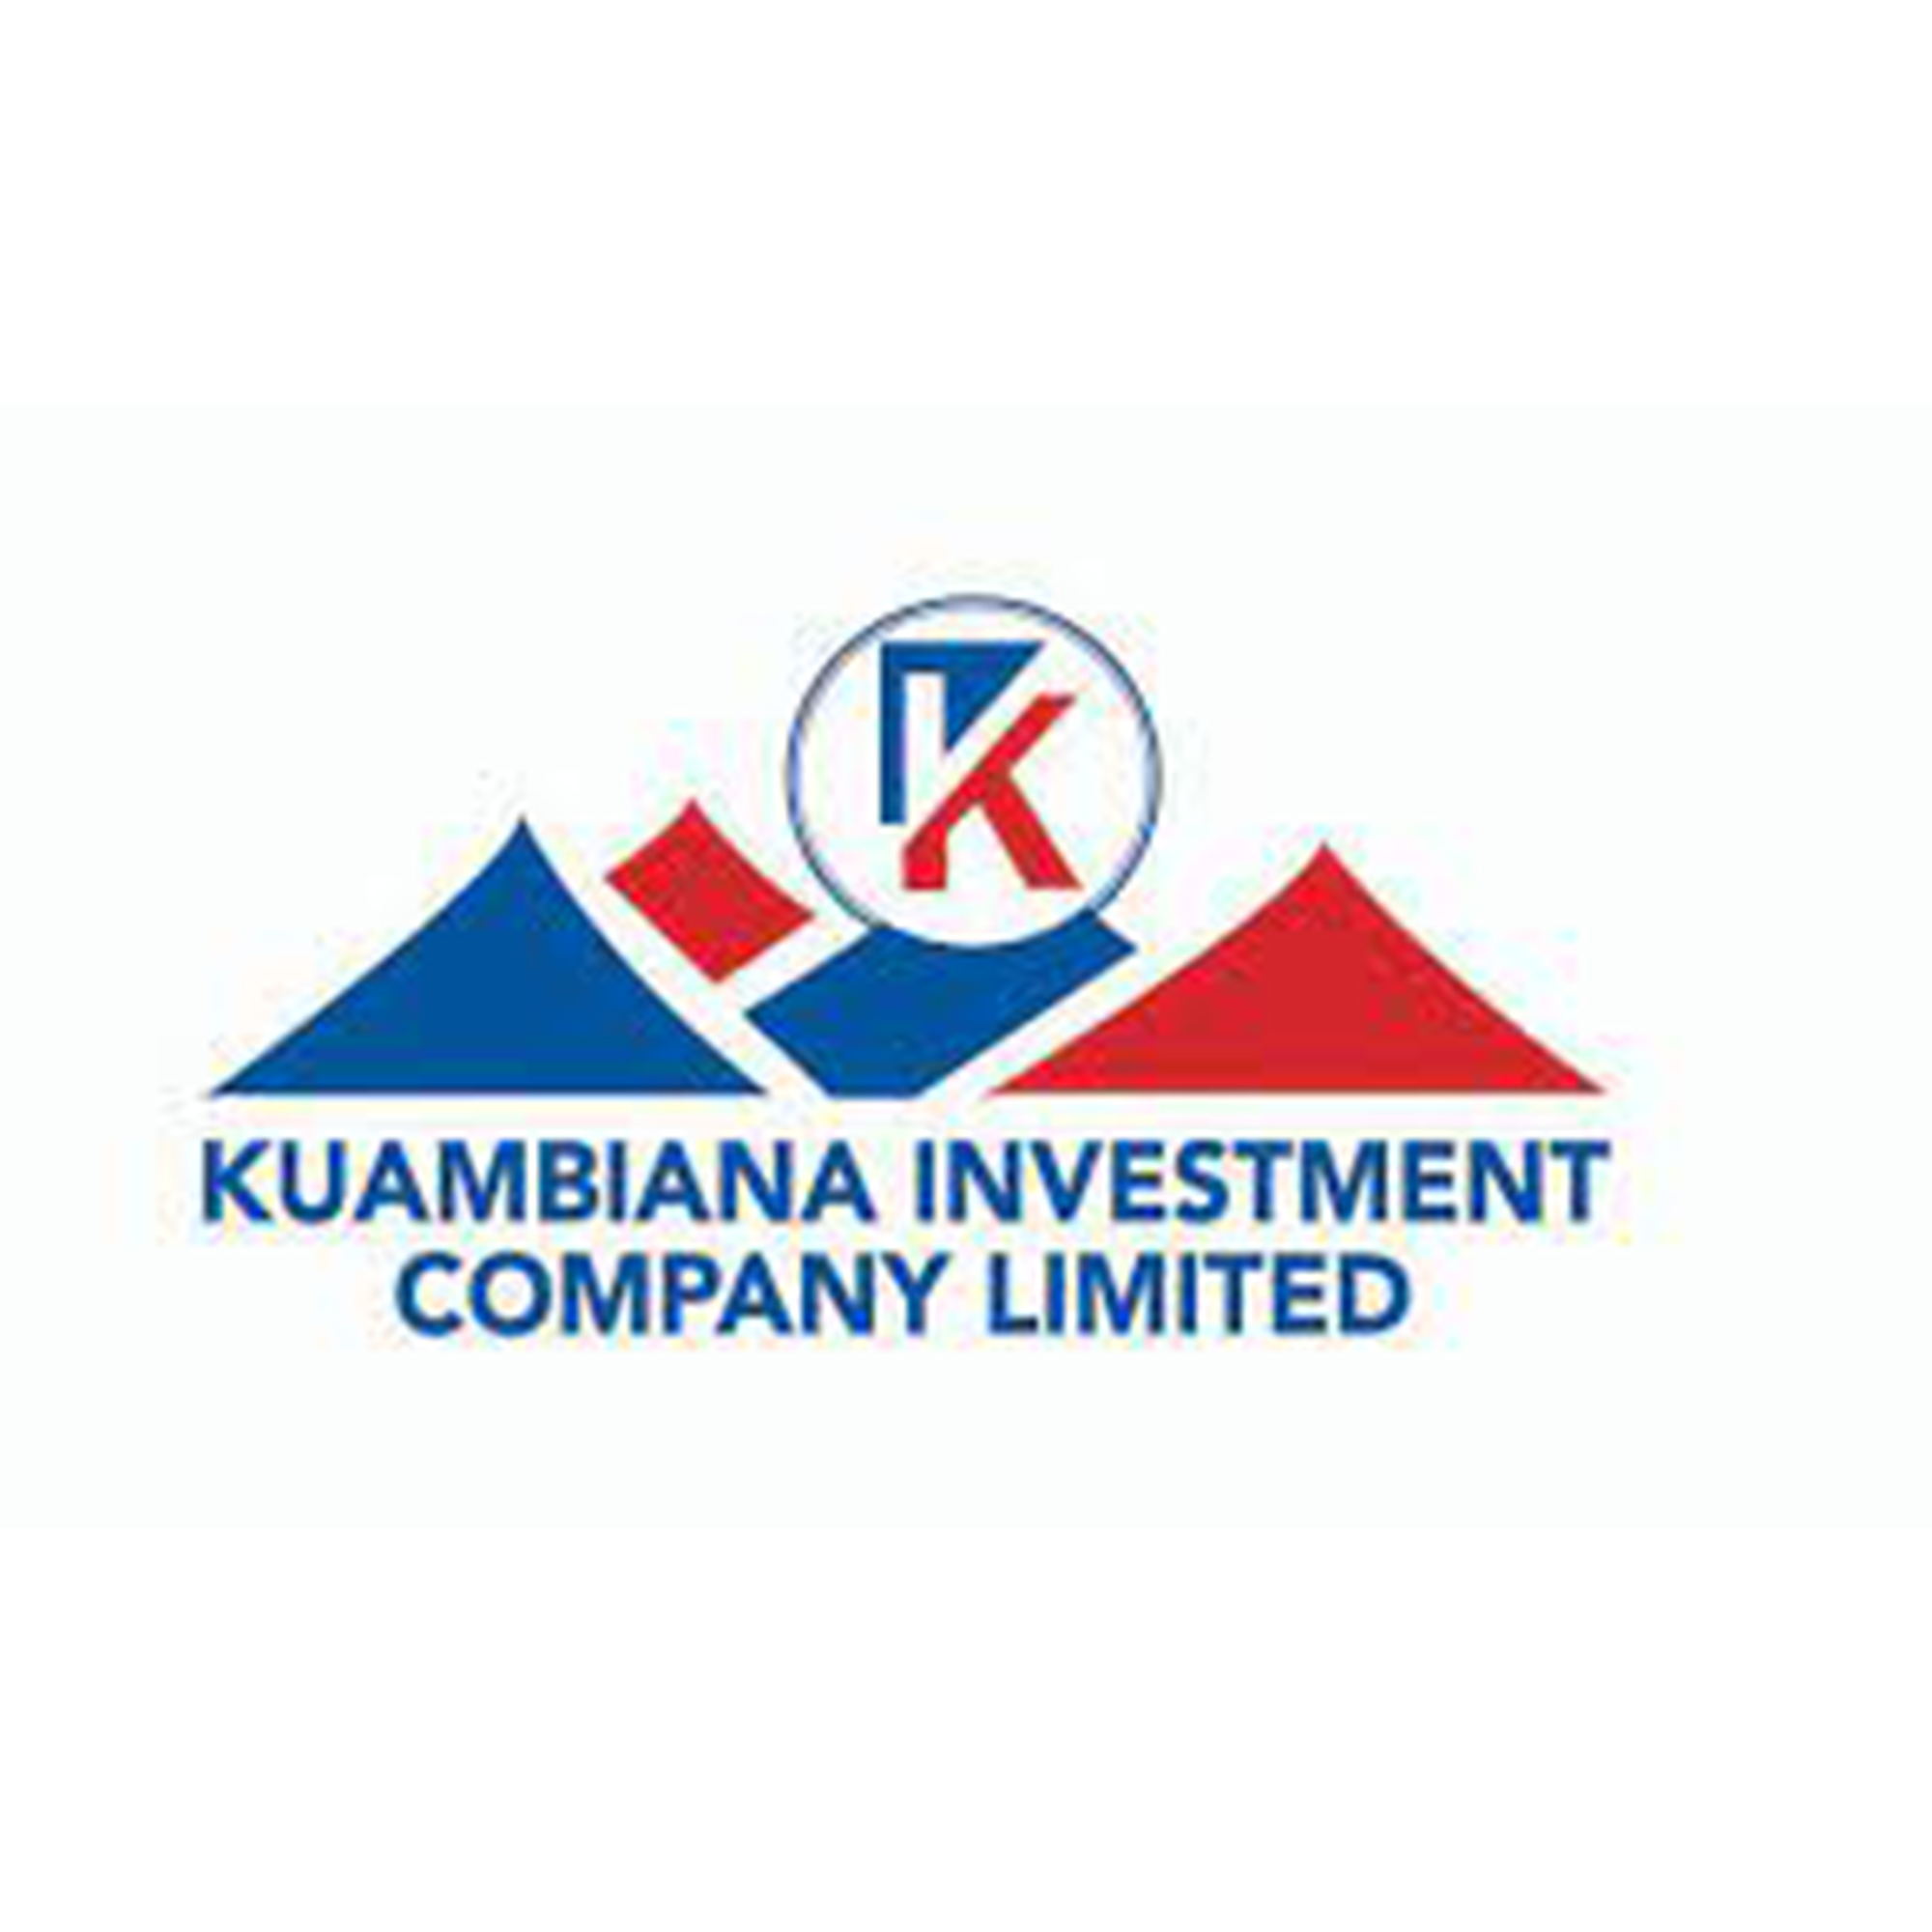 Kuambiana Investment